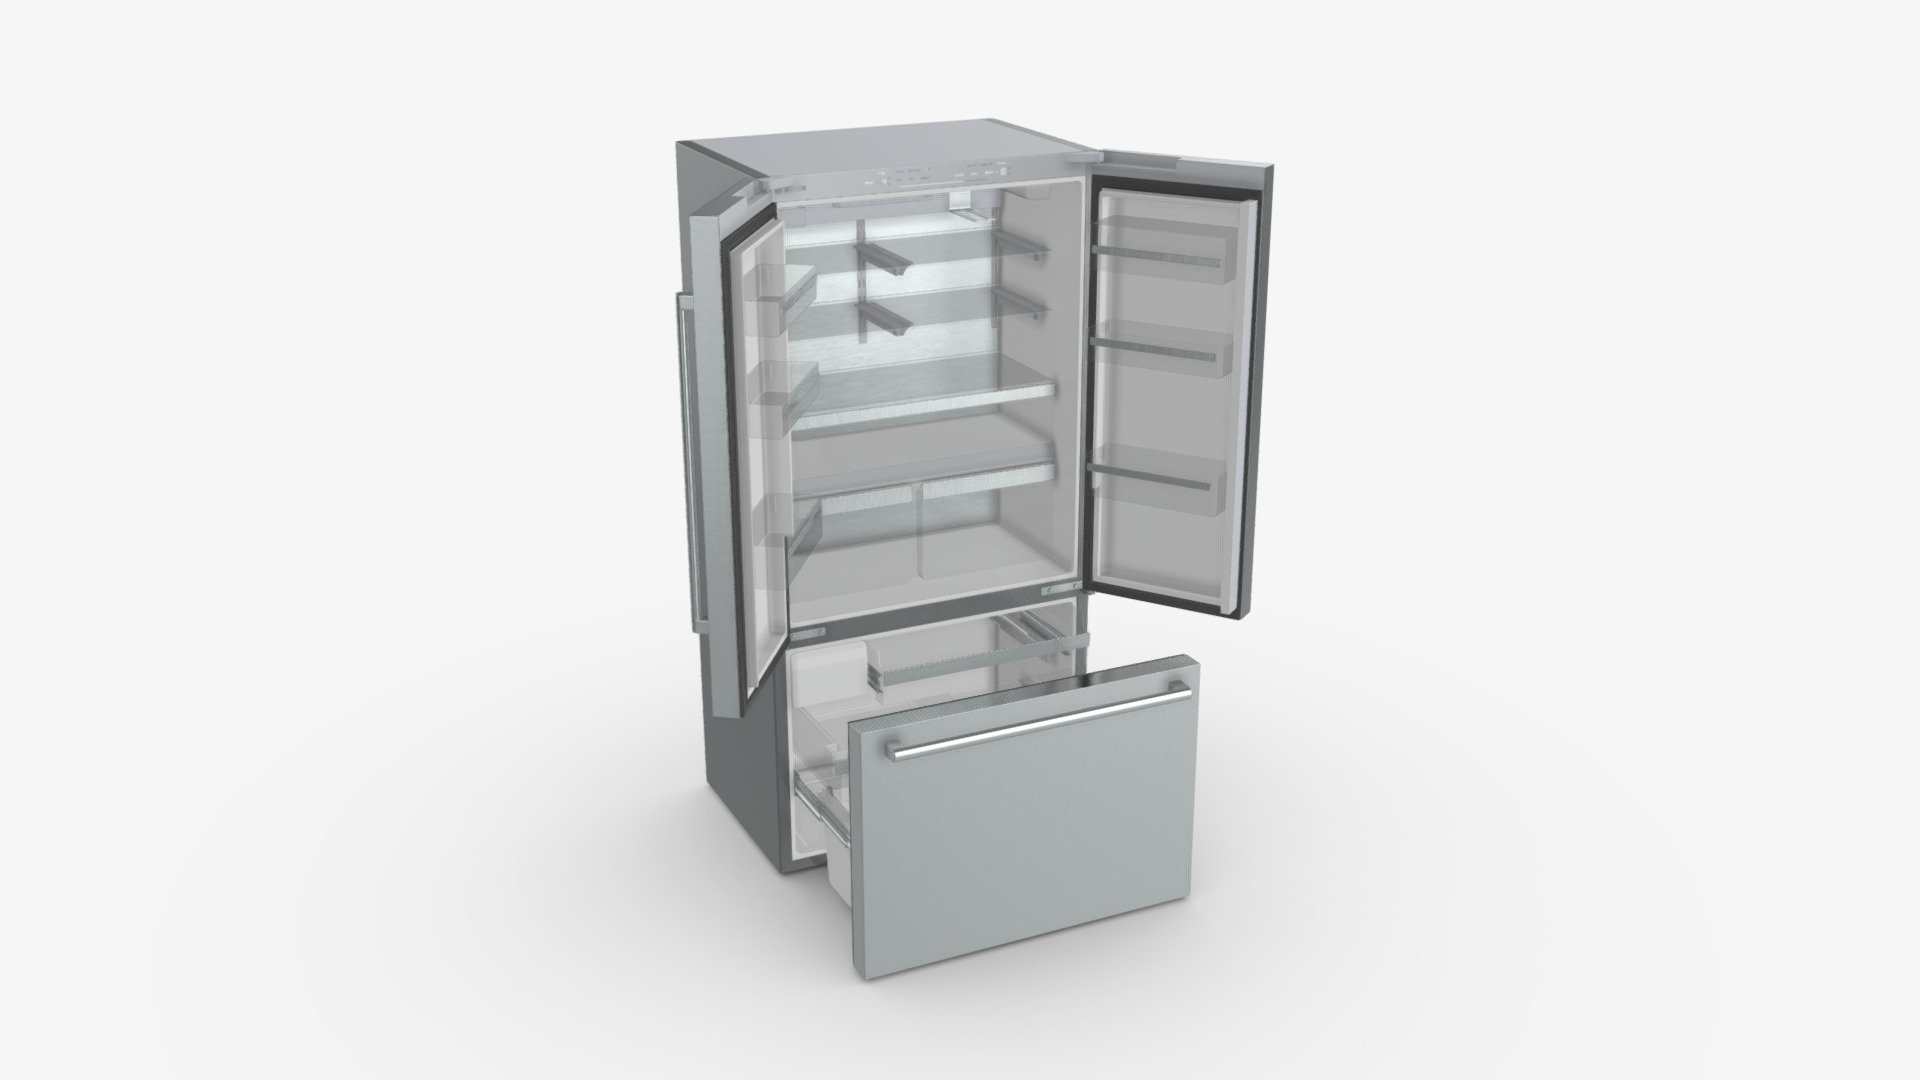 Fridge-freezer Bosch KFF96PIEP Doors Open - Buy Royalty Free 3D model by HQ3DMOD (@AivisAstics) 3d model